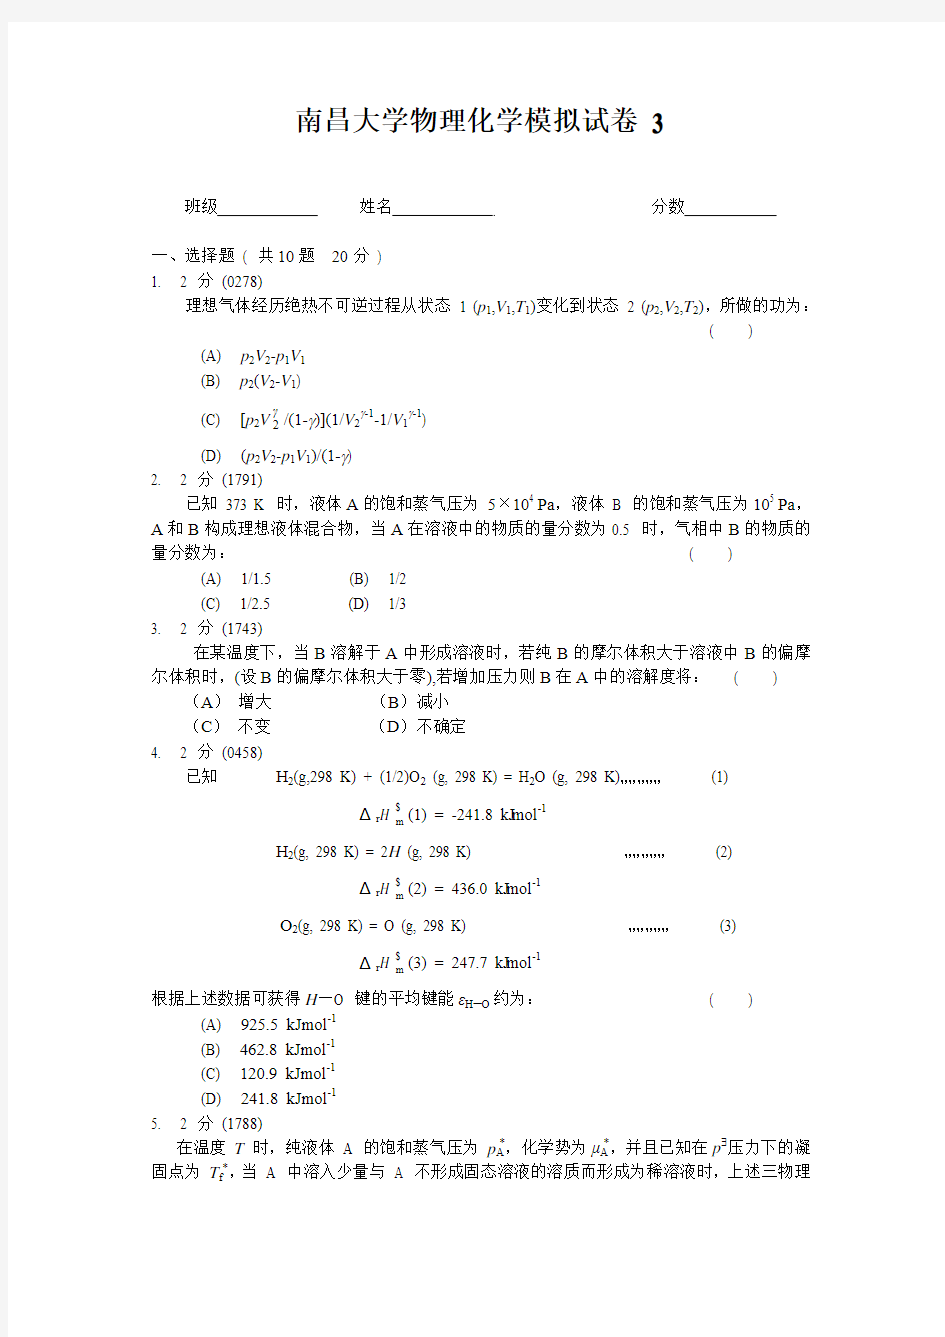 南昌大学物理化学模拟试卷3及答案(试卷由老师提供复习使用)